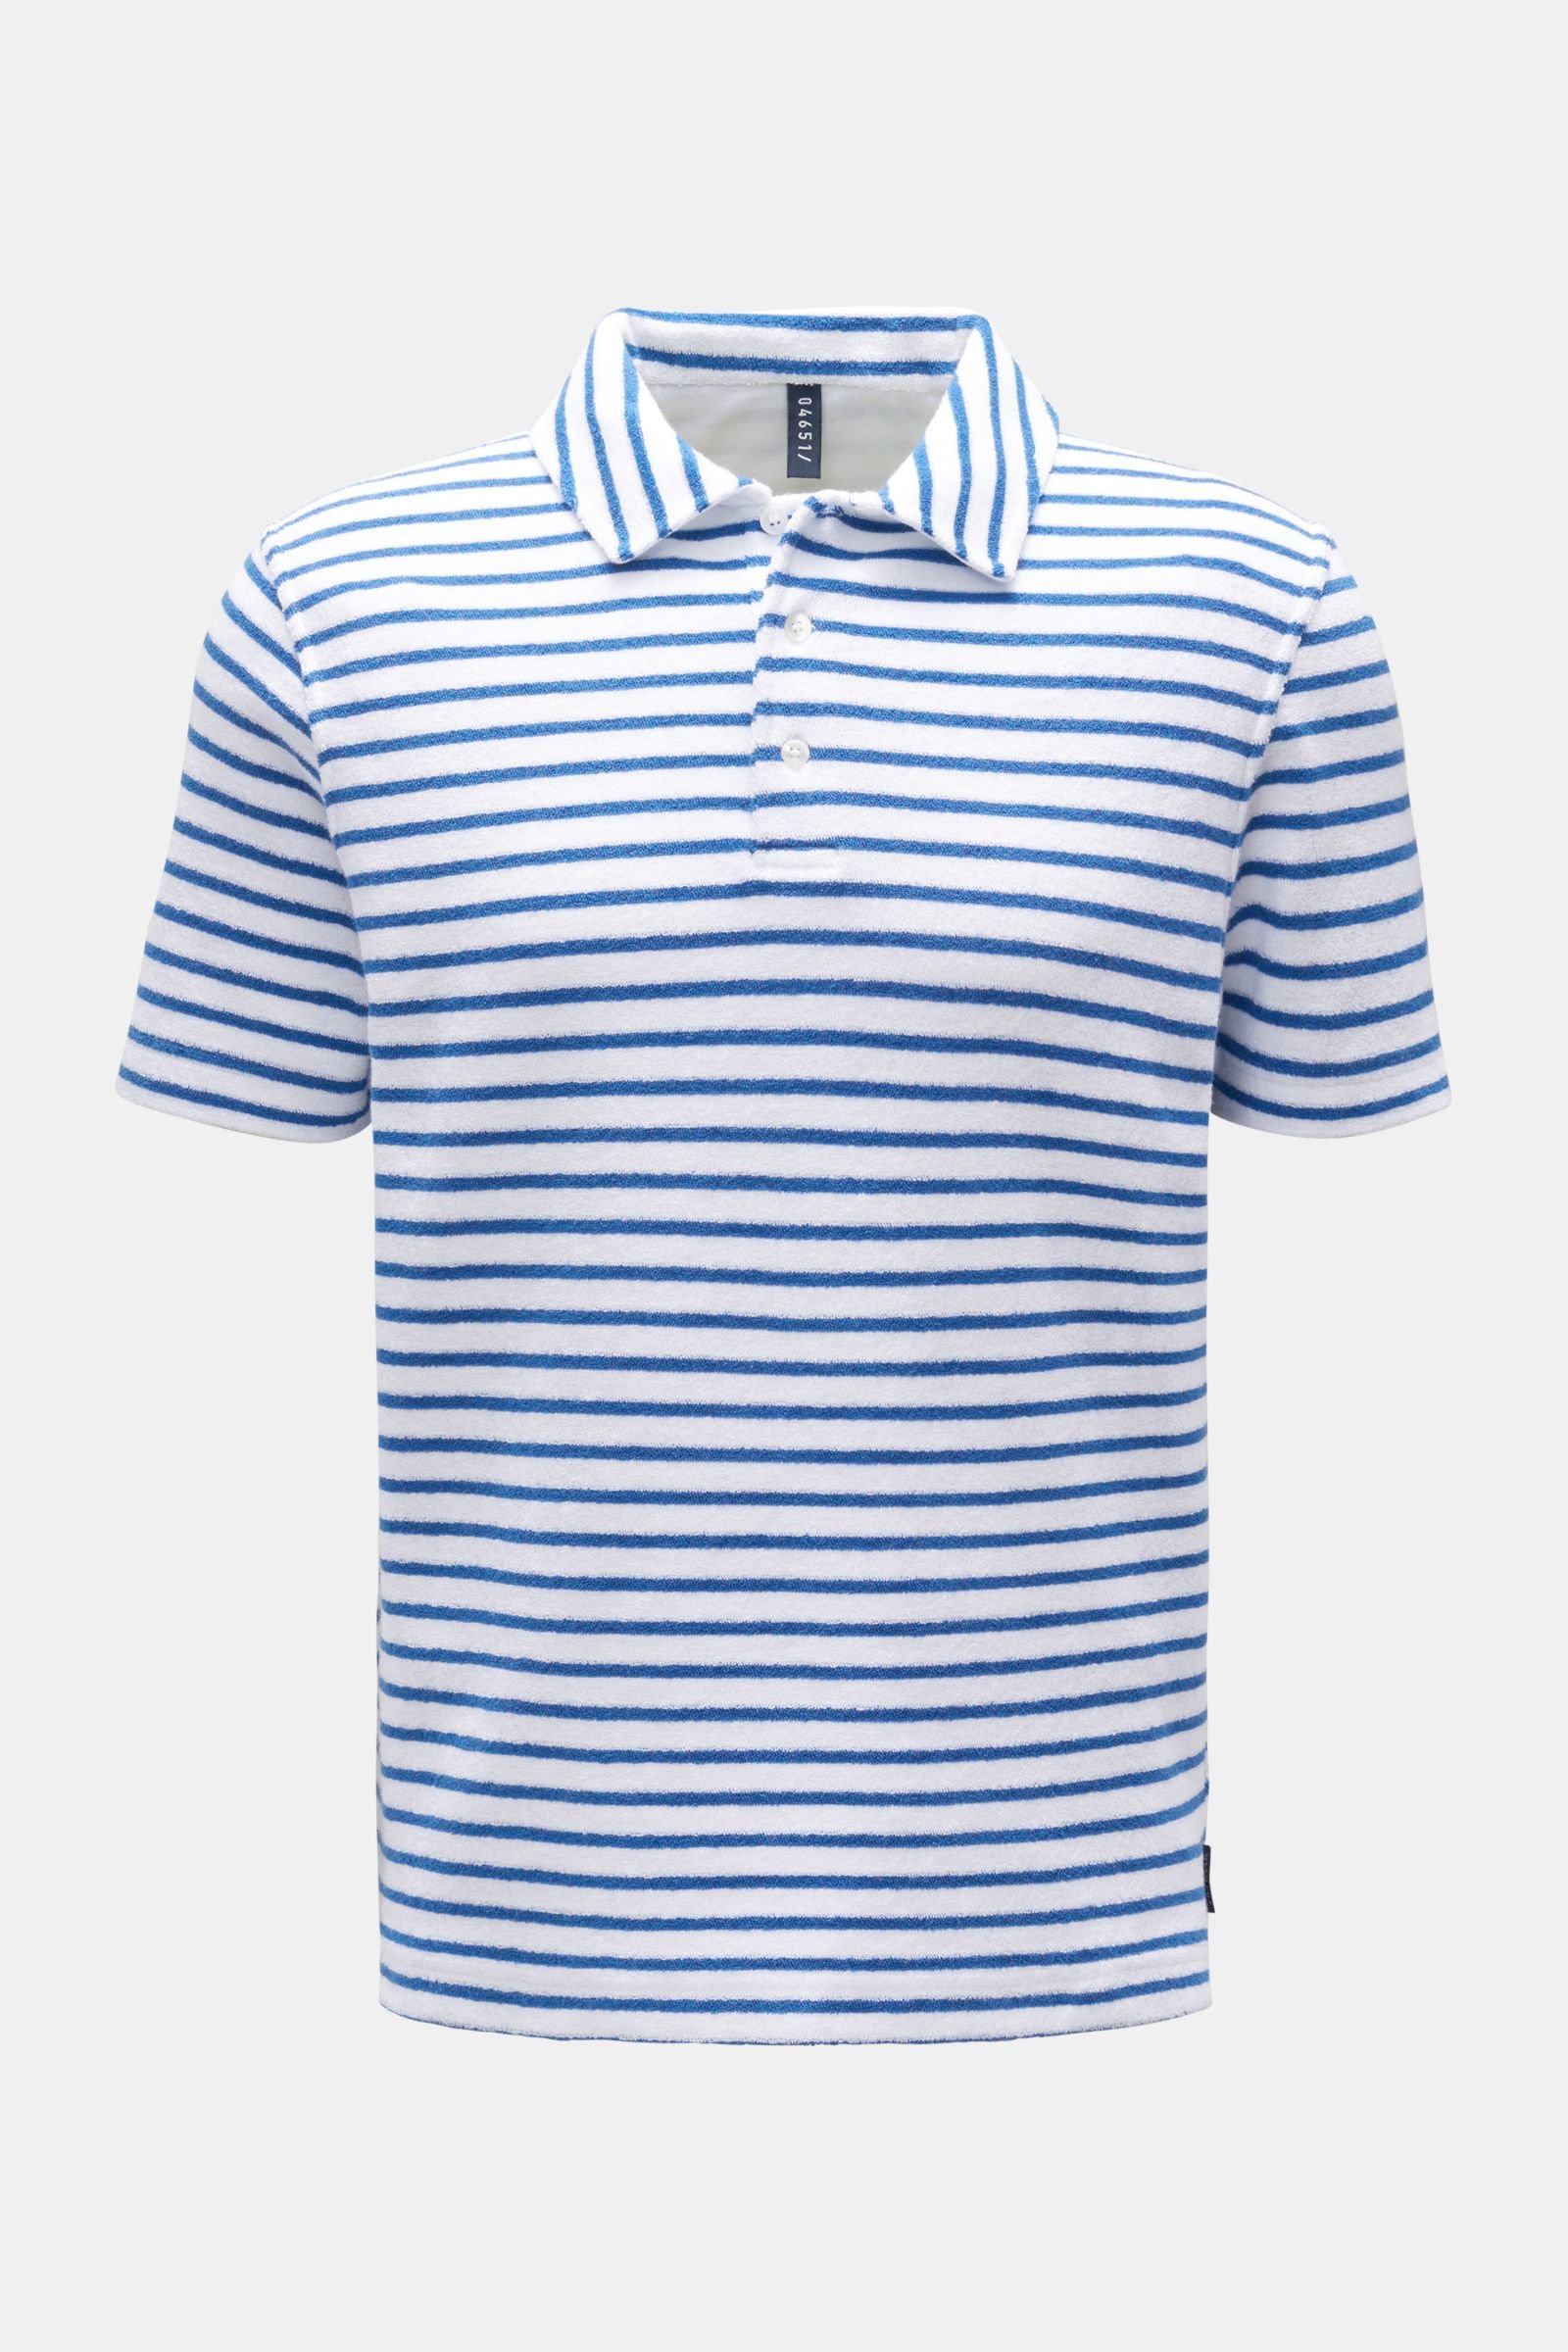 Terry polo shirt 'Terry Stripe Polo' blue/white striped